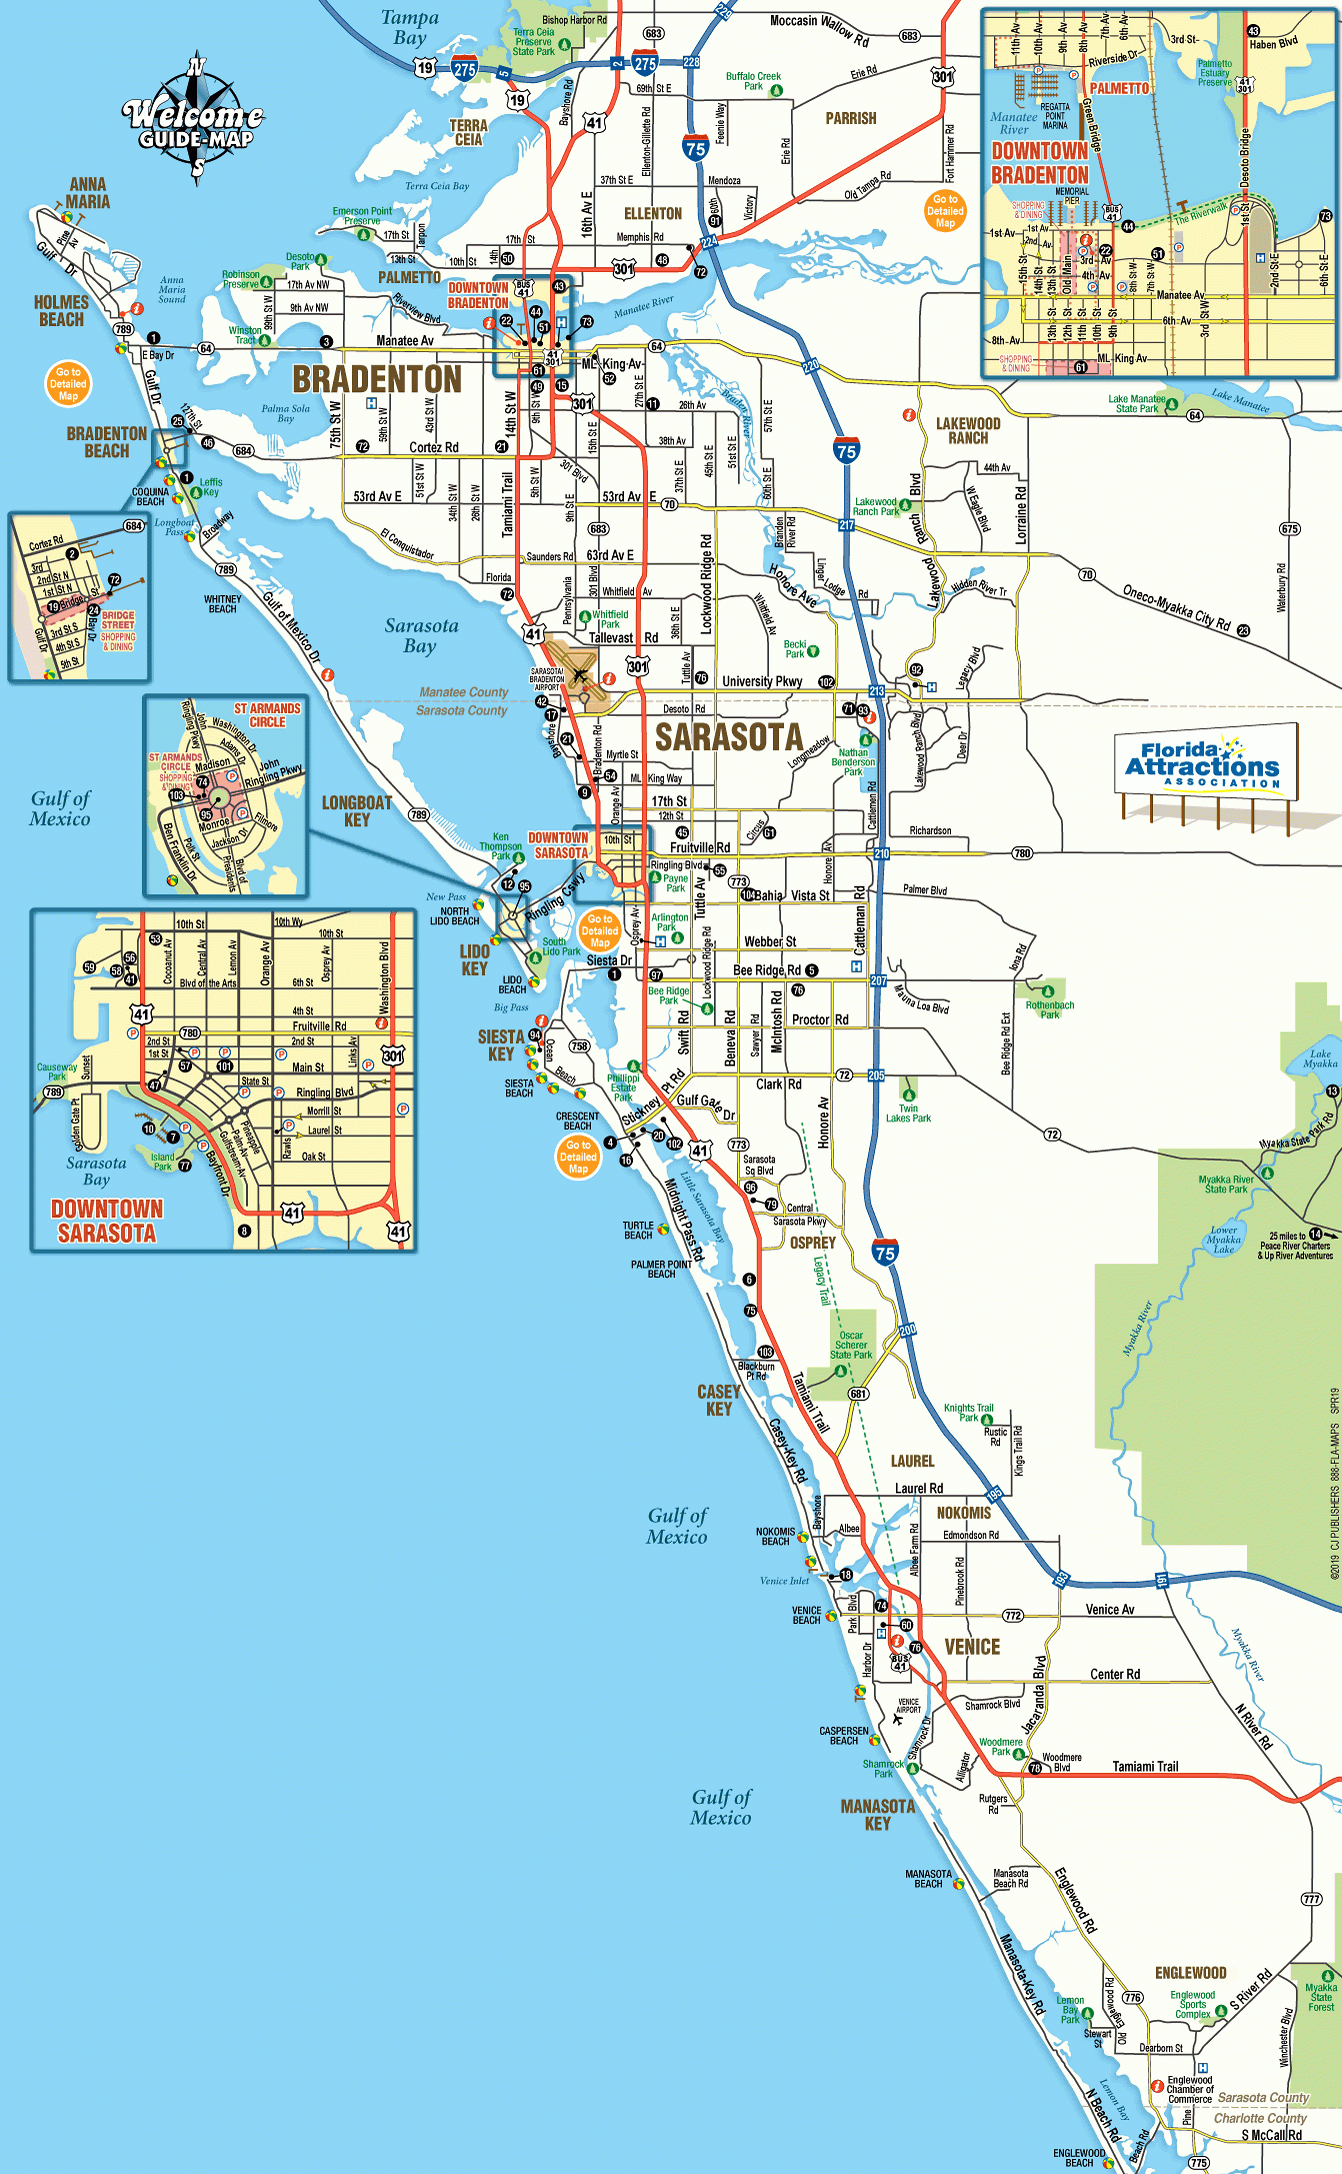 Map Of Sarasota And Bradenton Florida - Welcome Guide-Map To - Sarasota Bradenton Florida Map